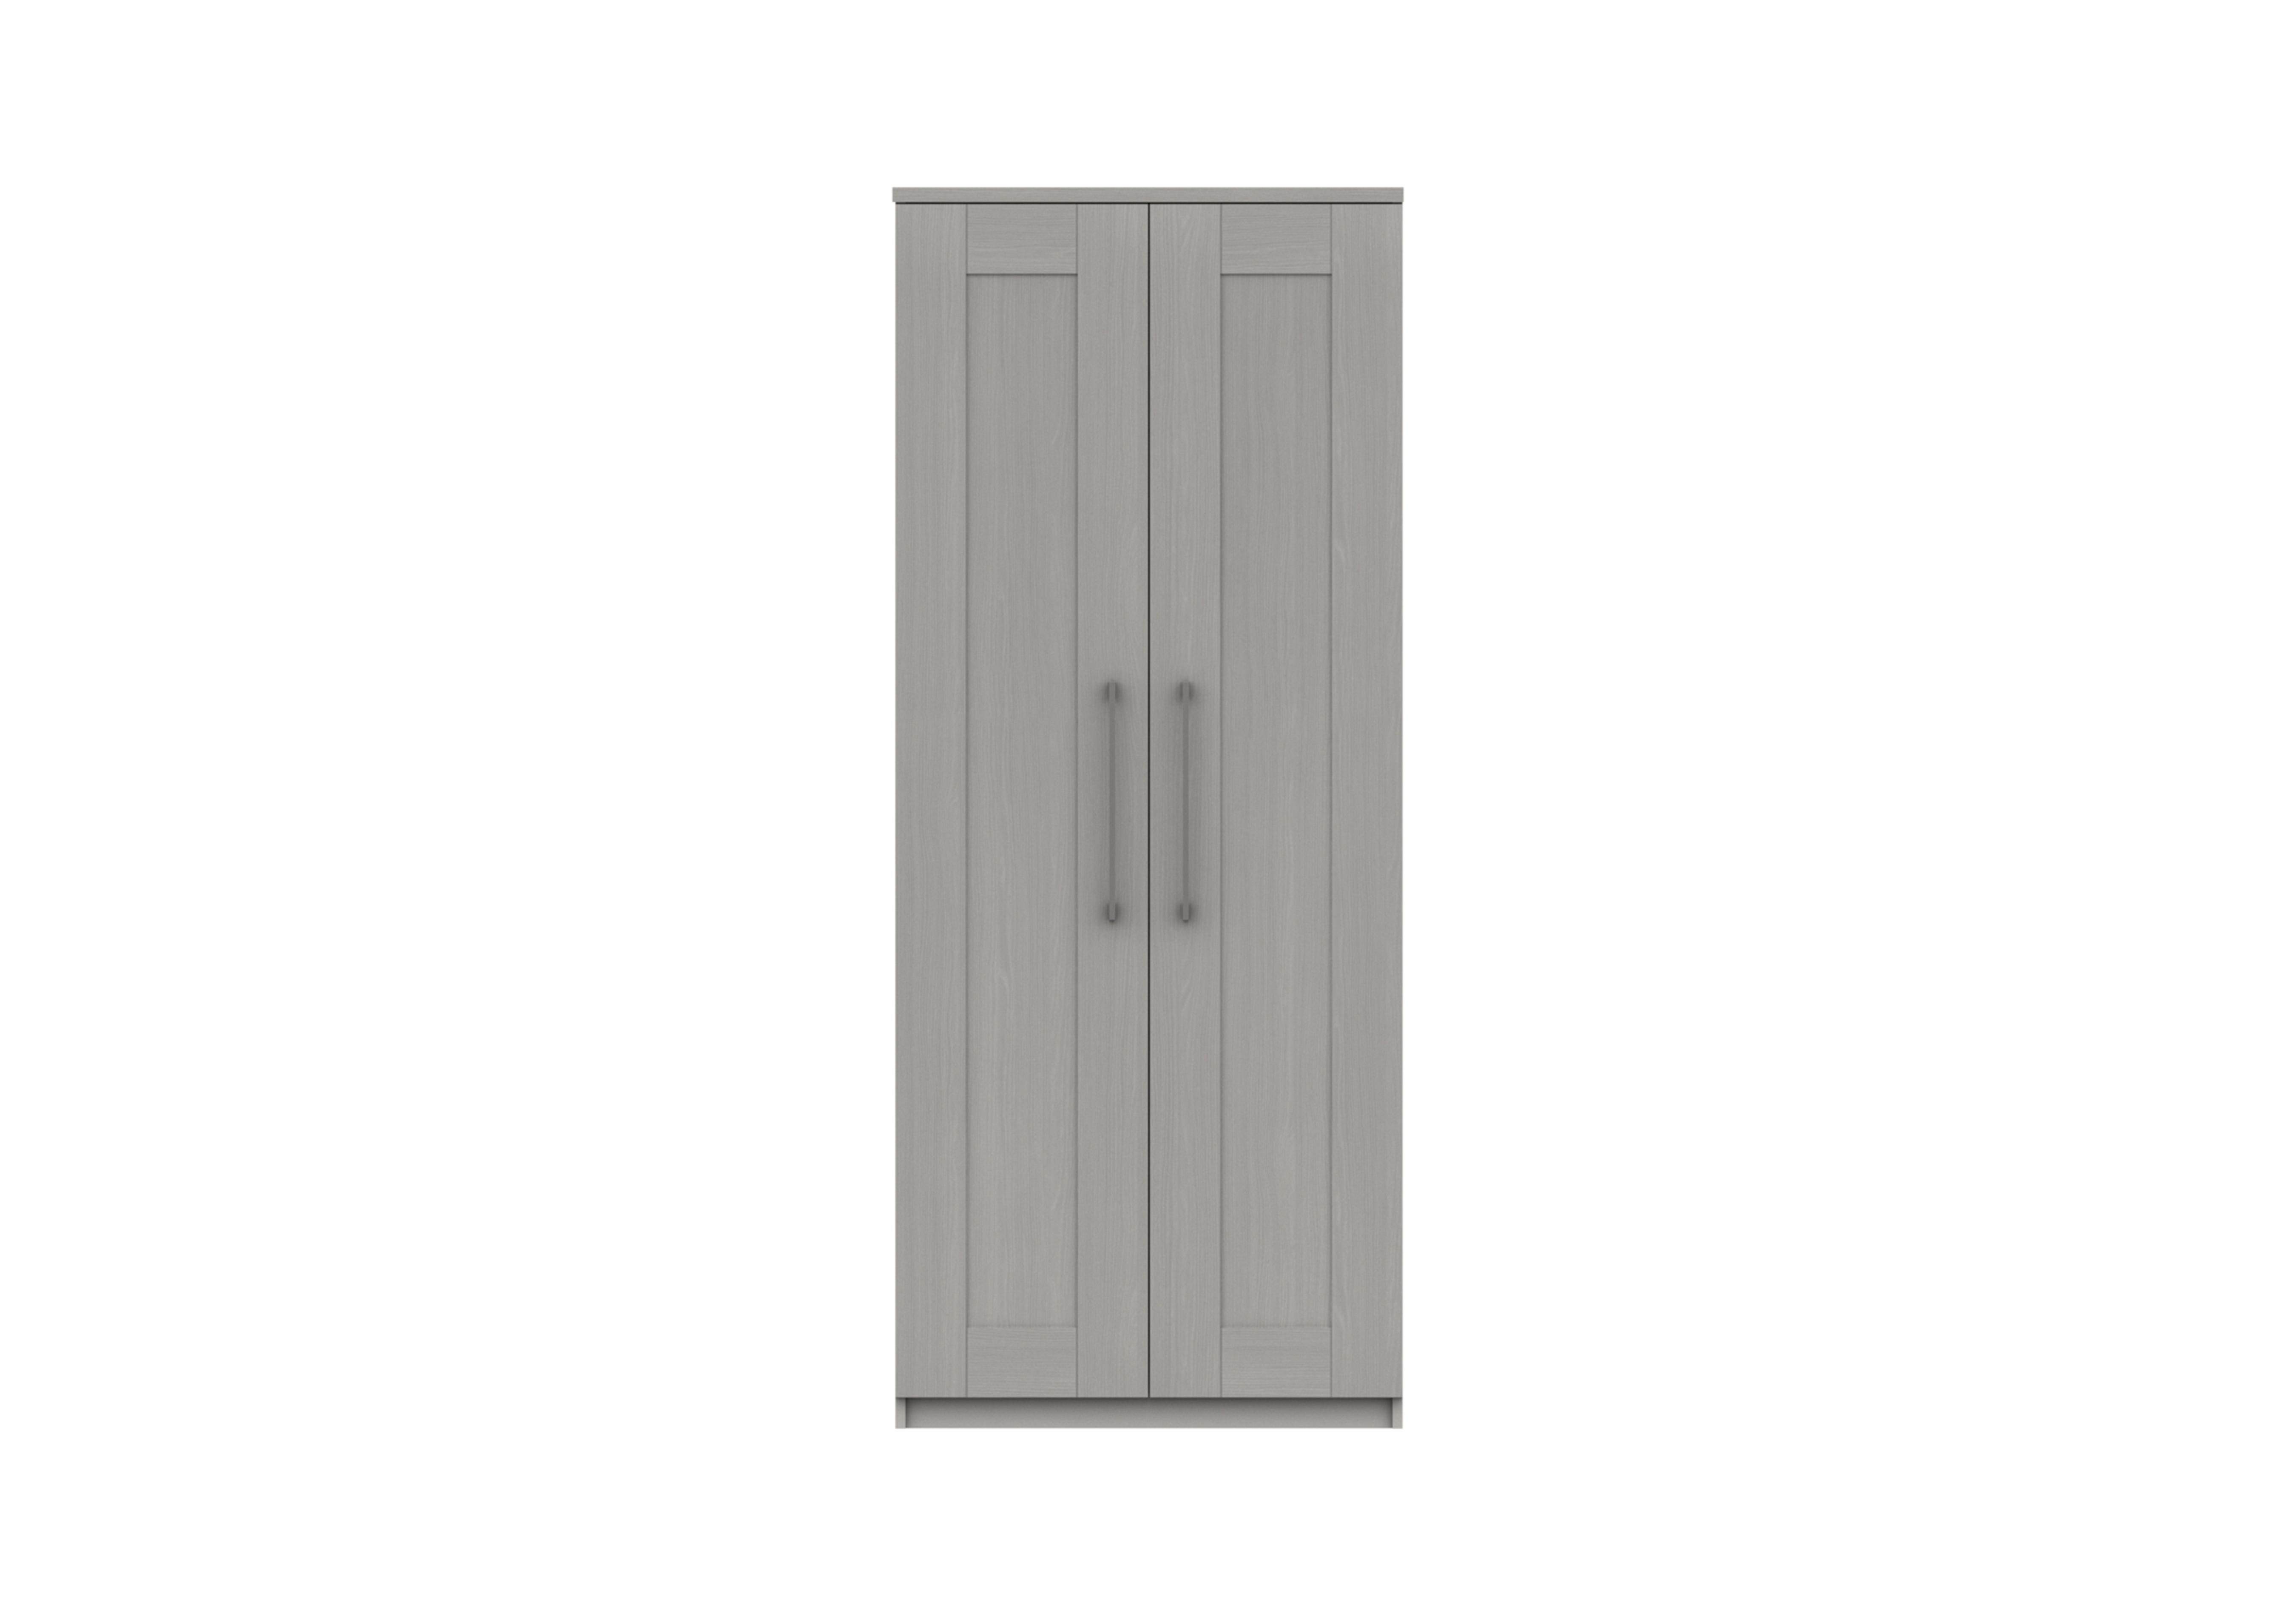 Fenchurch 2 Door Wardrobe in Light Grey on Furniture Village